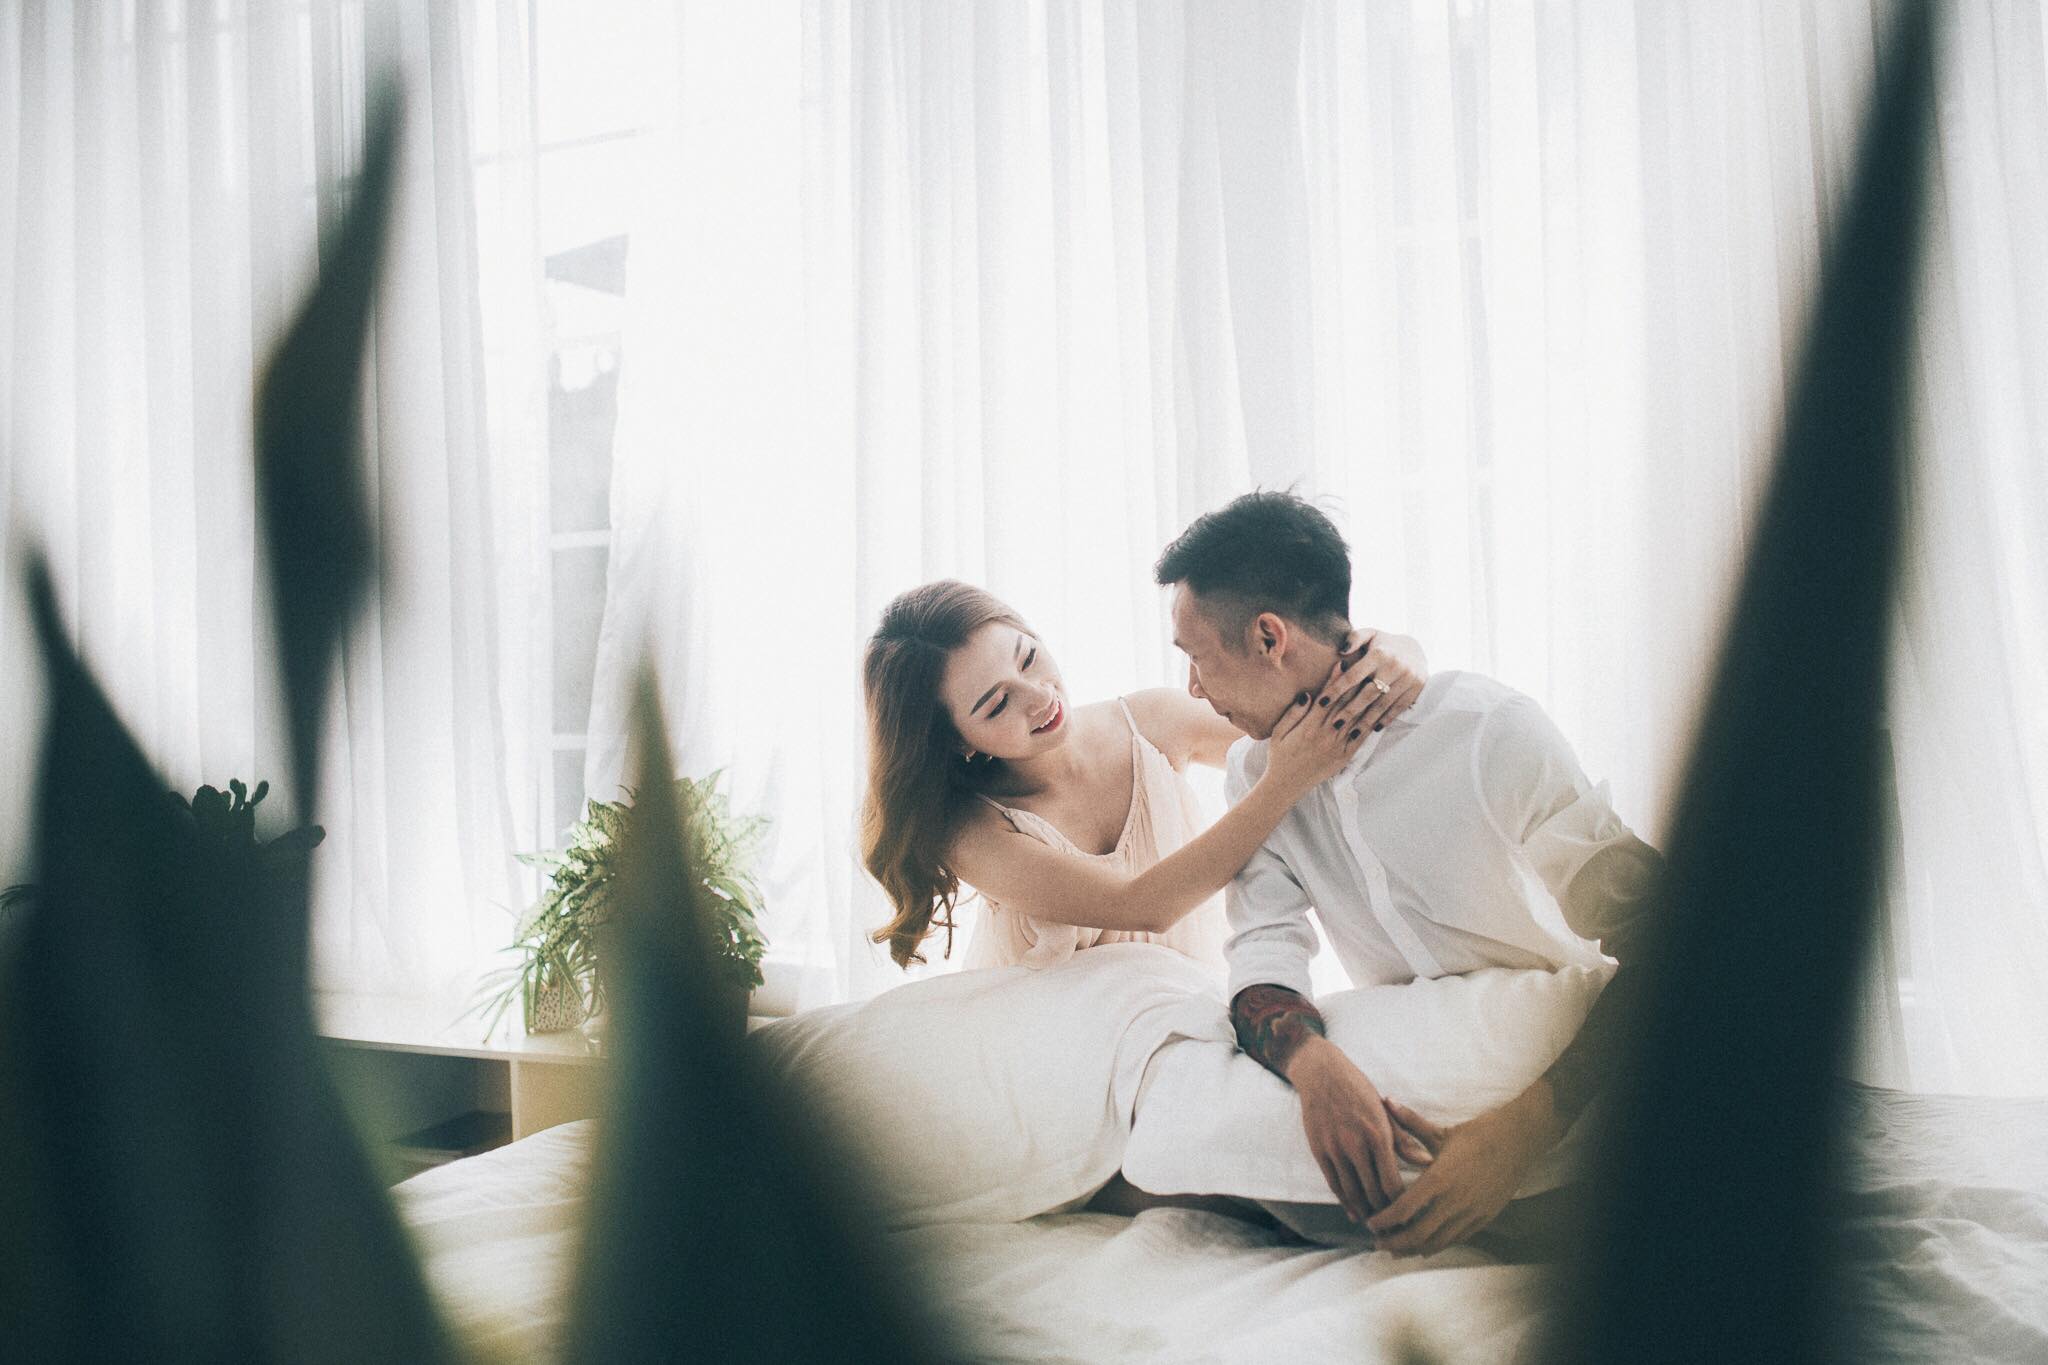 Album chụp ảnh cưới đẹp tại Hà Nội : Quân - Lê 7